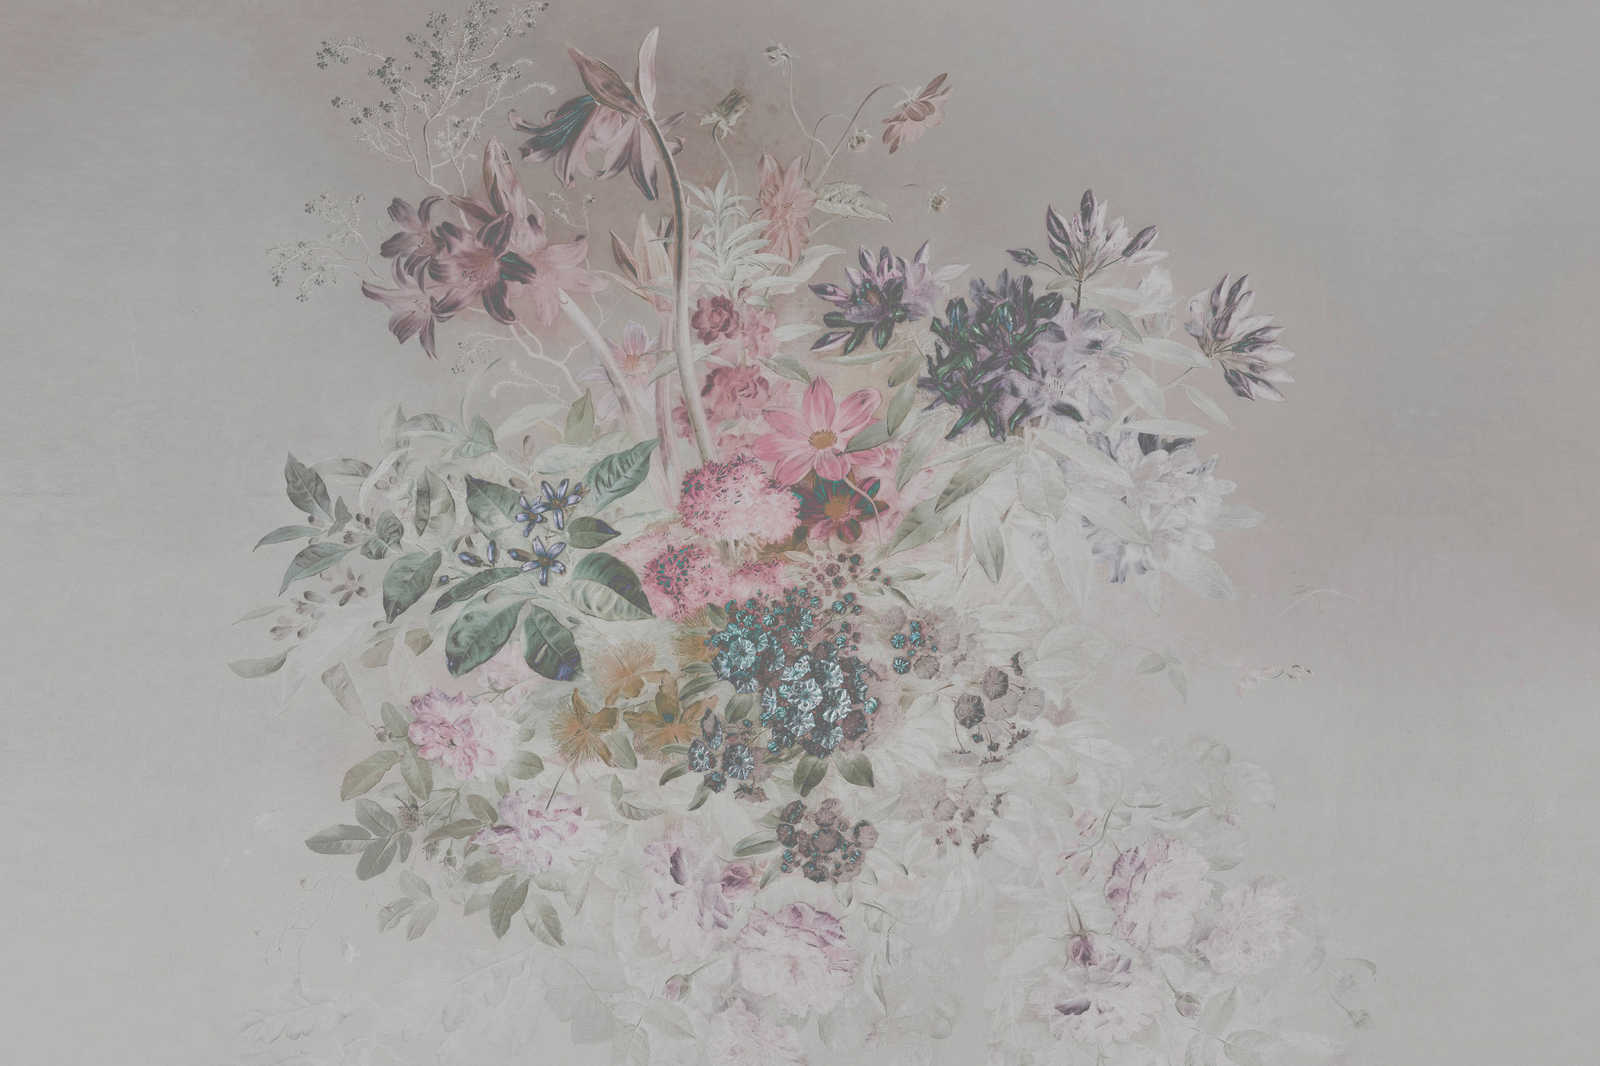             Bloemrijk canvas schilderij met pastel design | roze, grijs - 0.90 m x 0.60 m
        